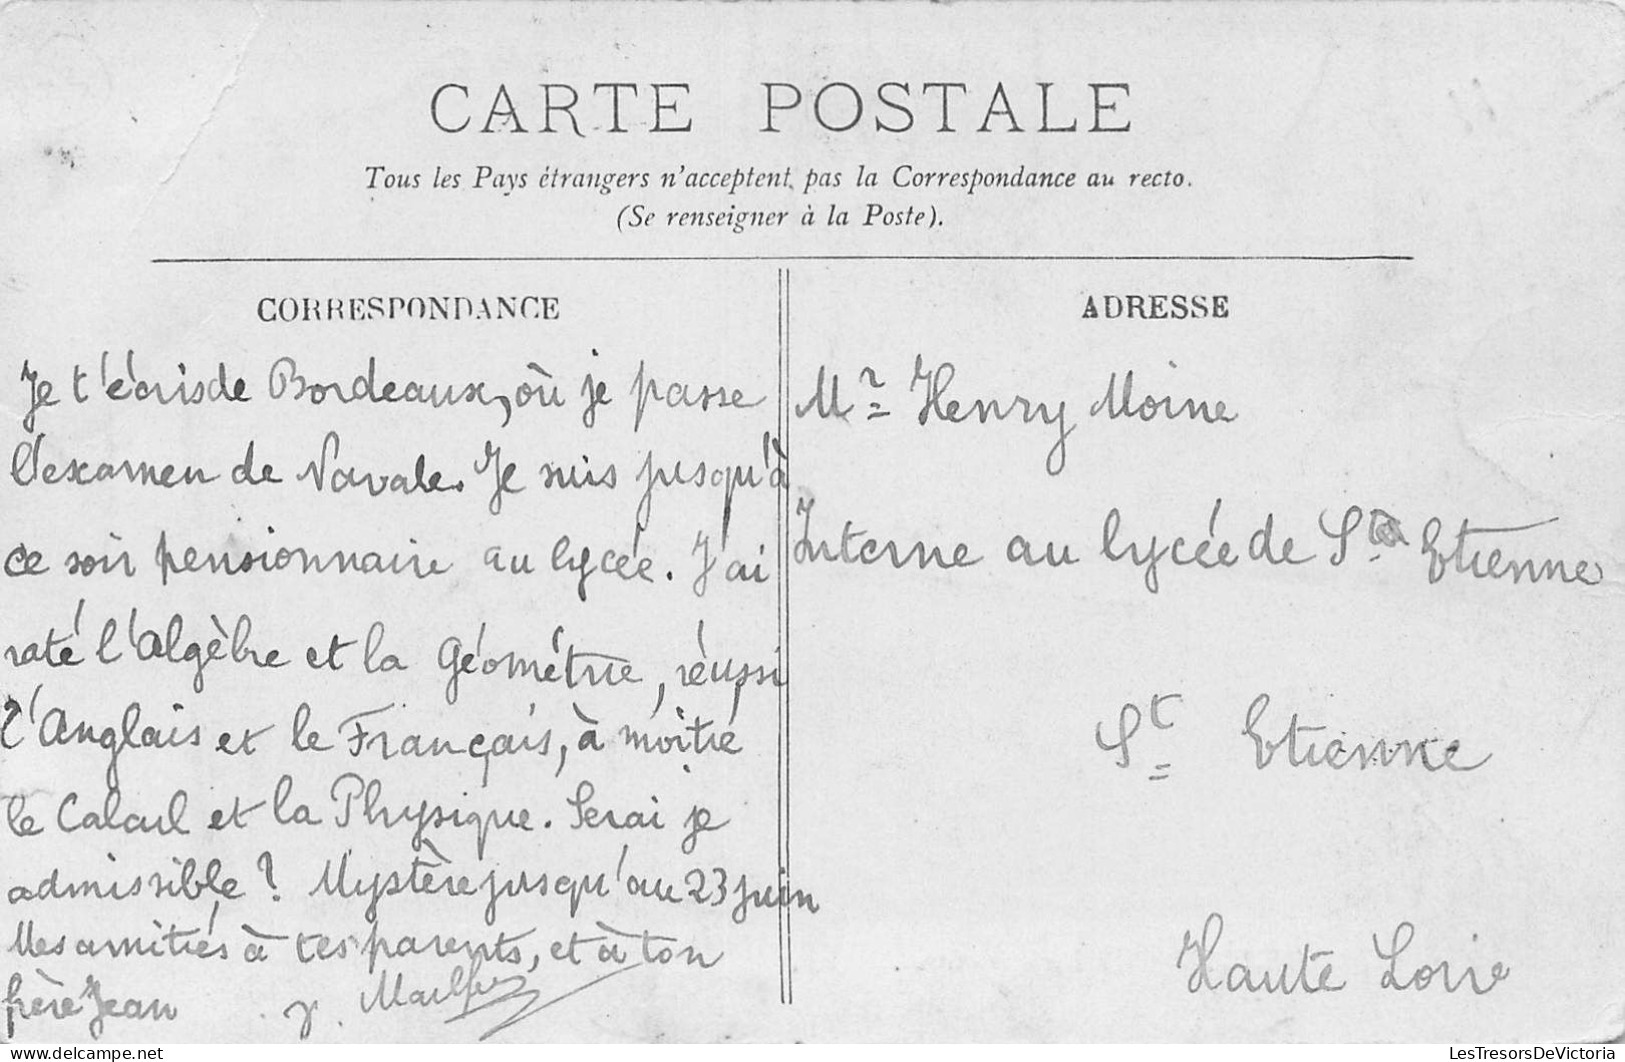 FRANCE - 33 - BORDEAUX - Le Lycée National - LL - Carte Postale Ancienne - Bordeaux